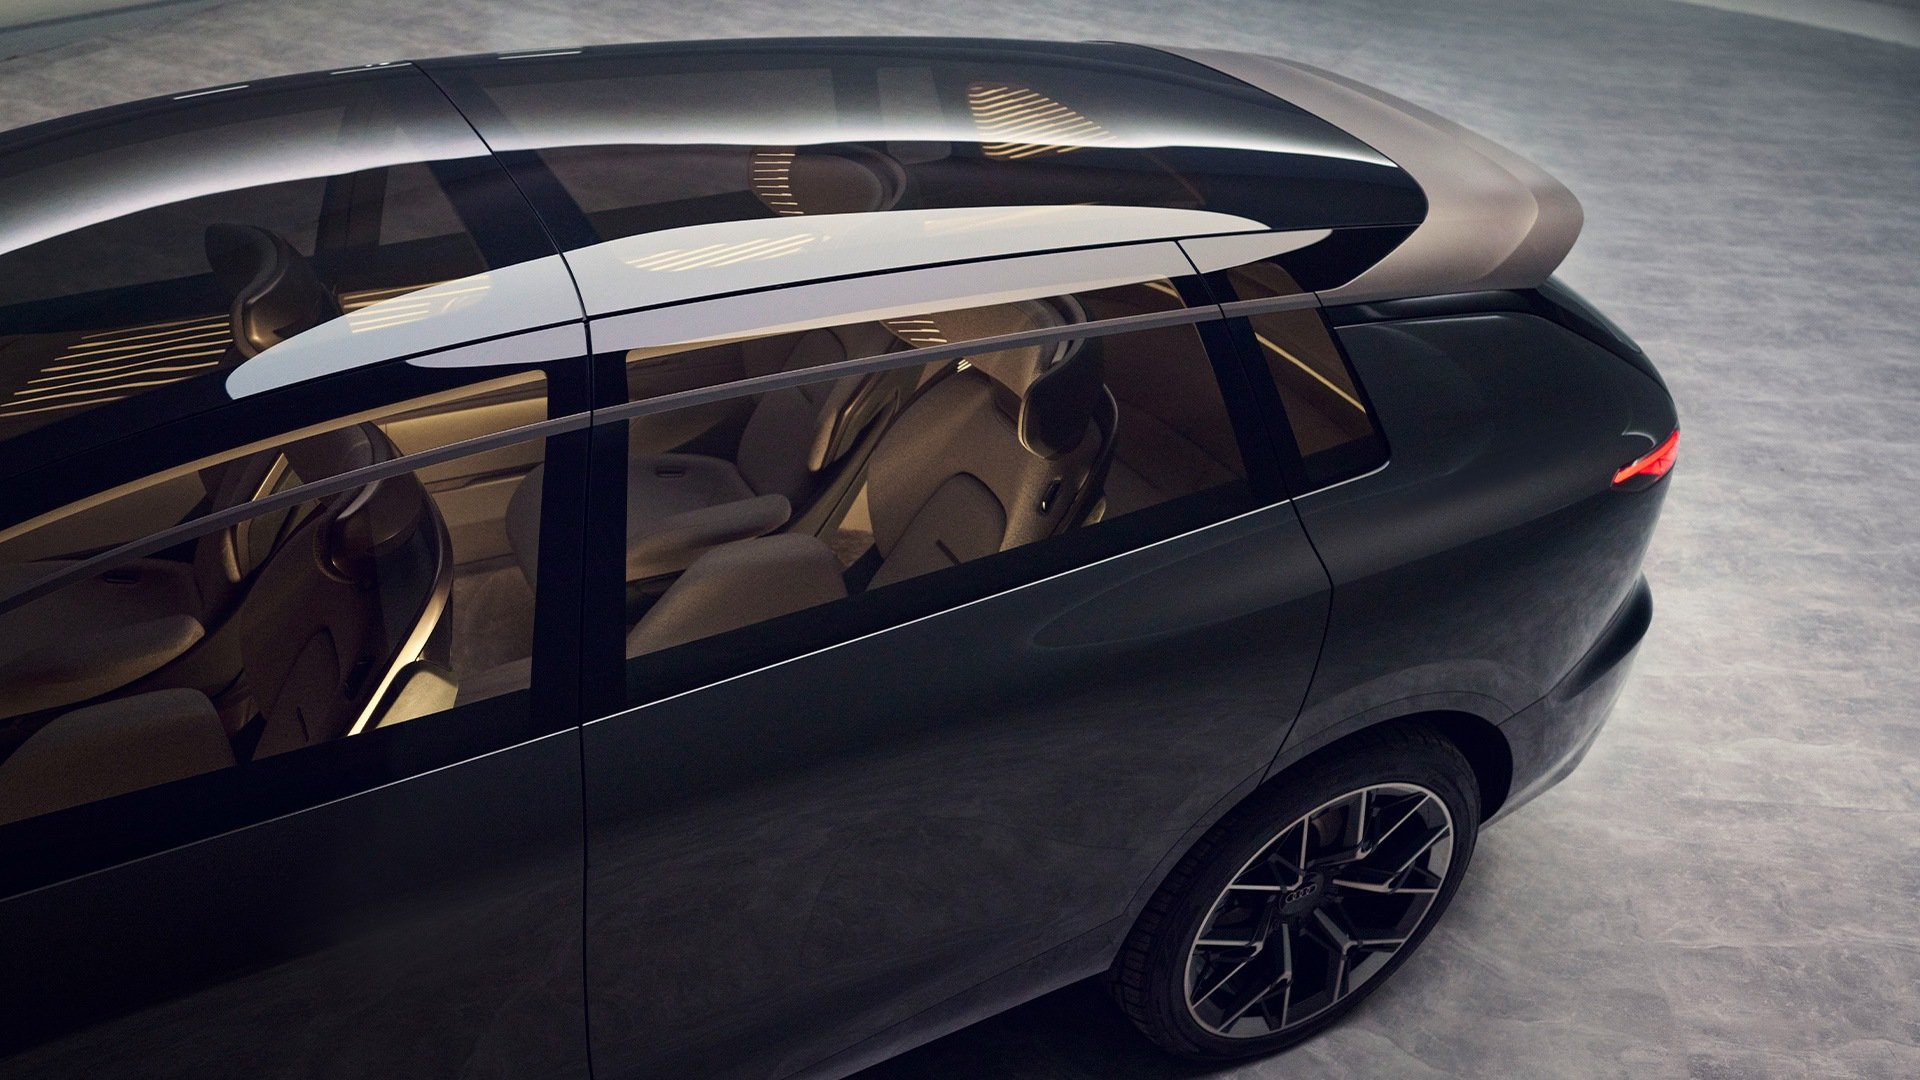 Pogled v notranjost konceptnega vozila Audi urbansphere skozi stekleno streho.